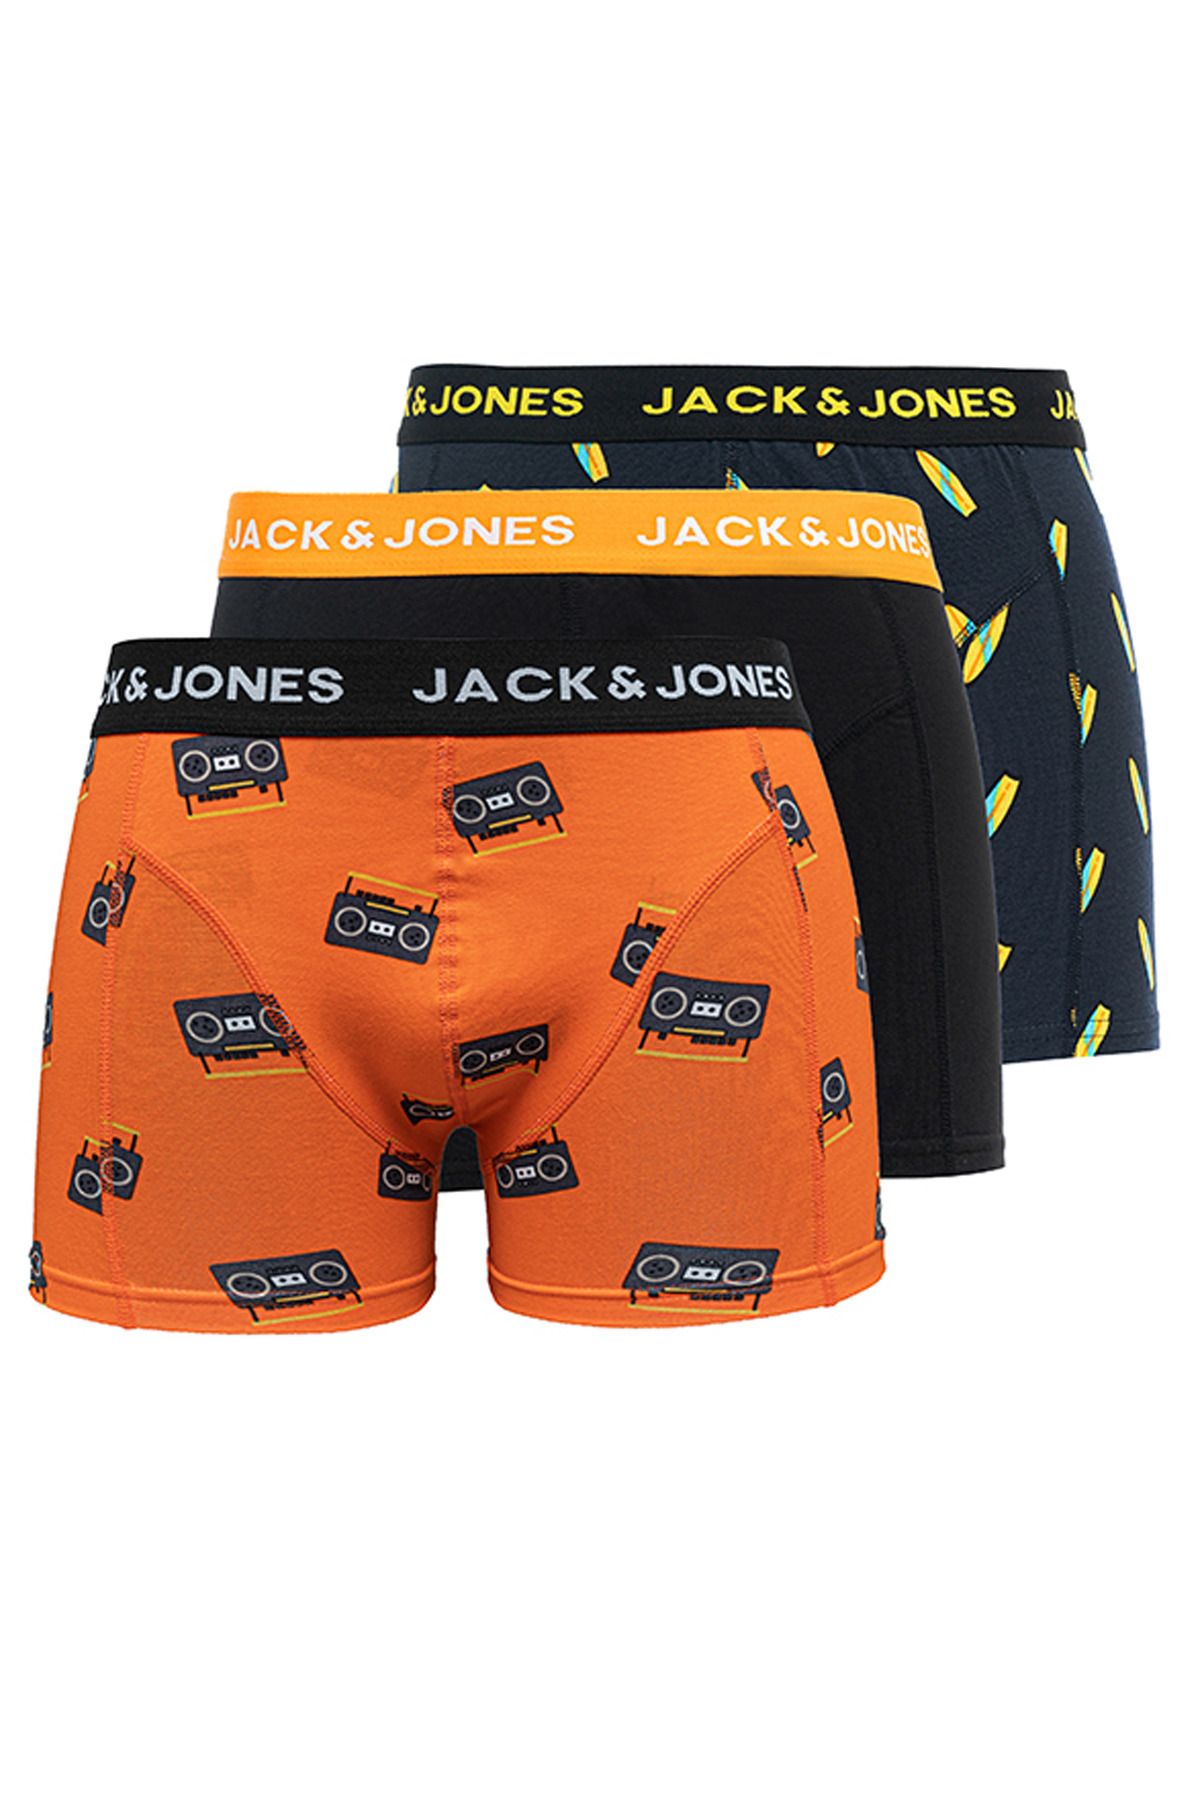 Jack & Jones Erkek 3'lü Karışık Boxer Paketi - Tom